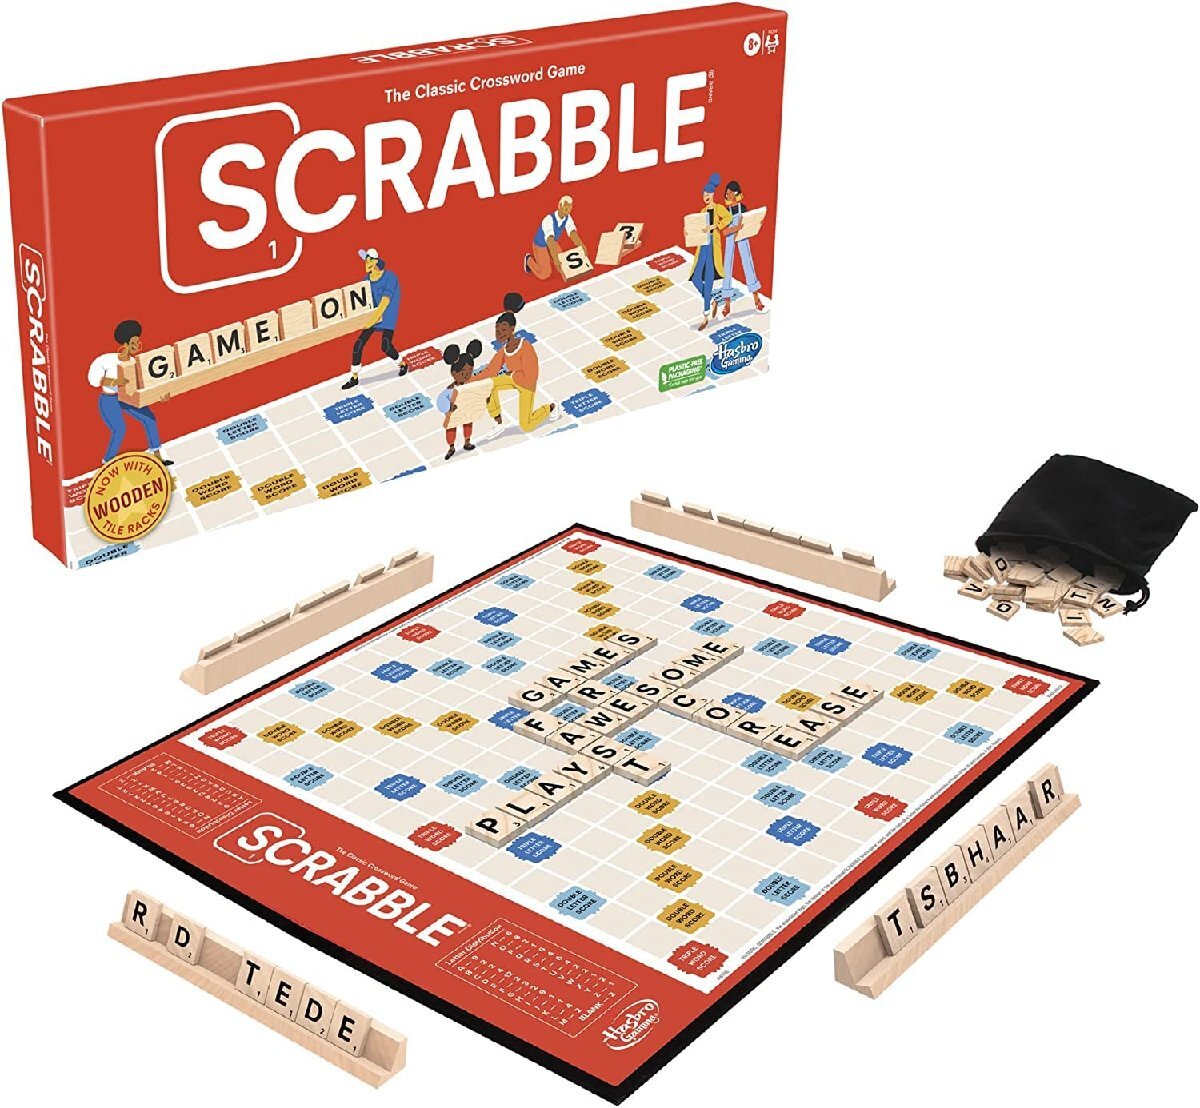 ハズブロ(HASBRO) Scrabble スクラブル ボードゲーム 2-4人でプレイ可能 クロスワード ゲーム 英語版 [並行輸入品]_画像1